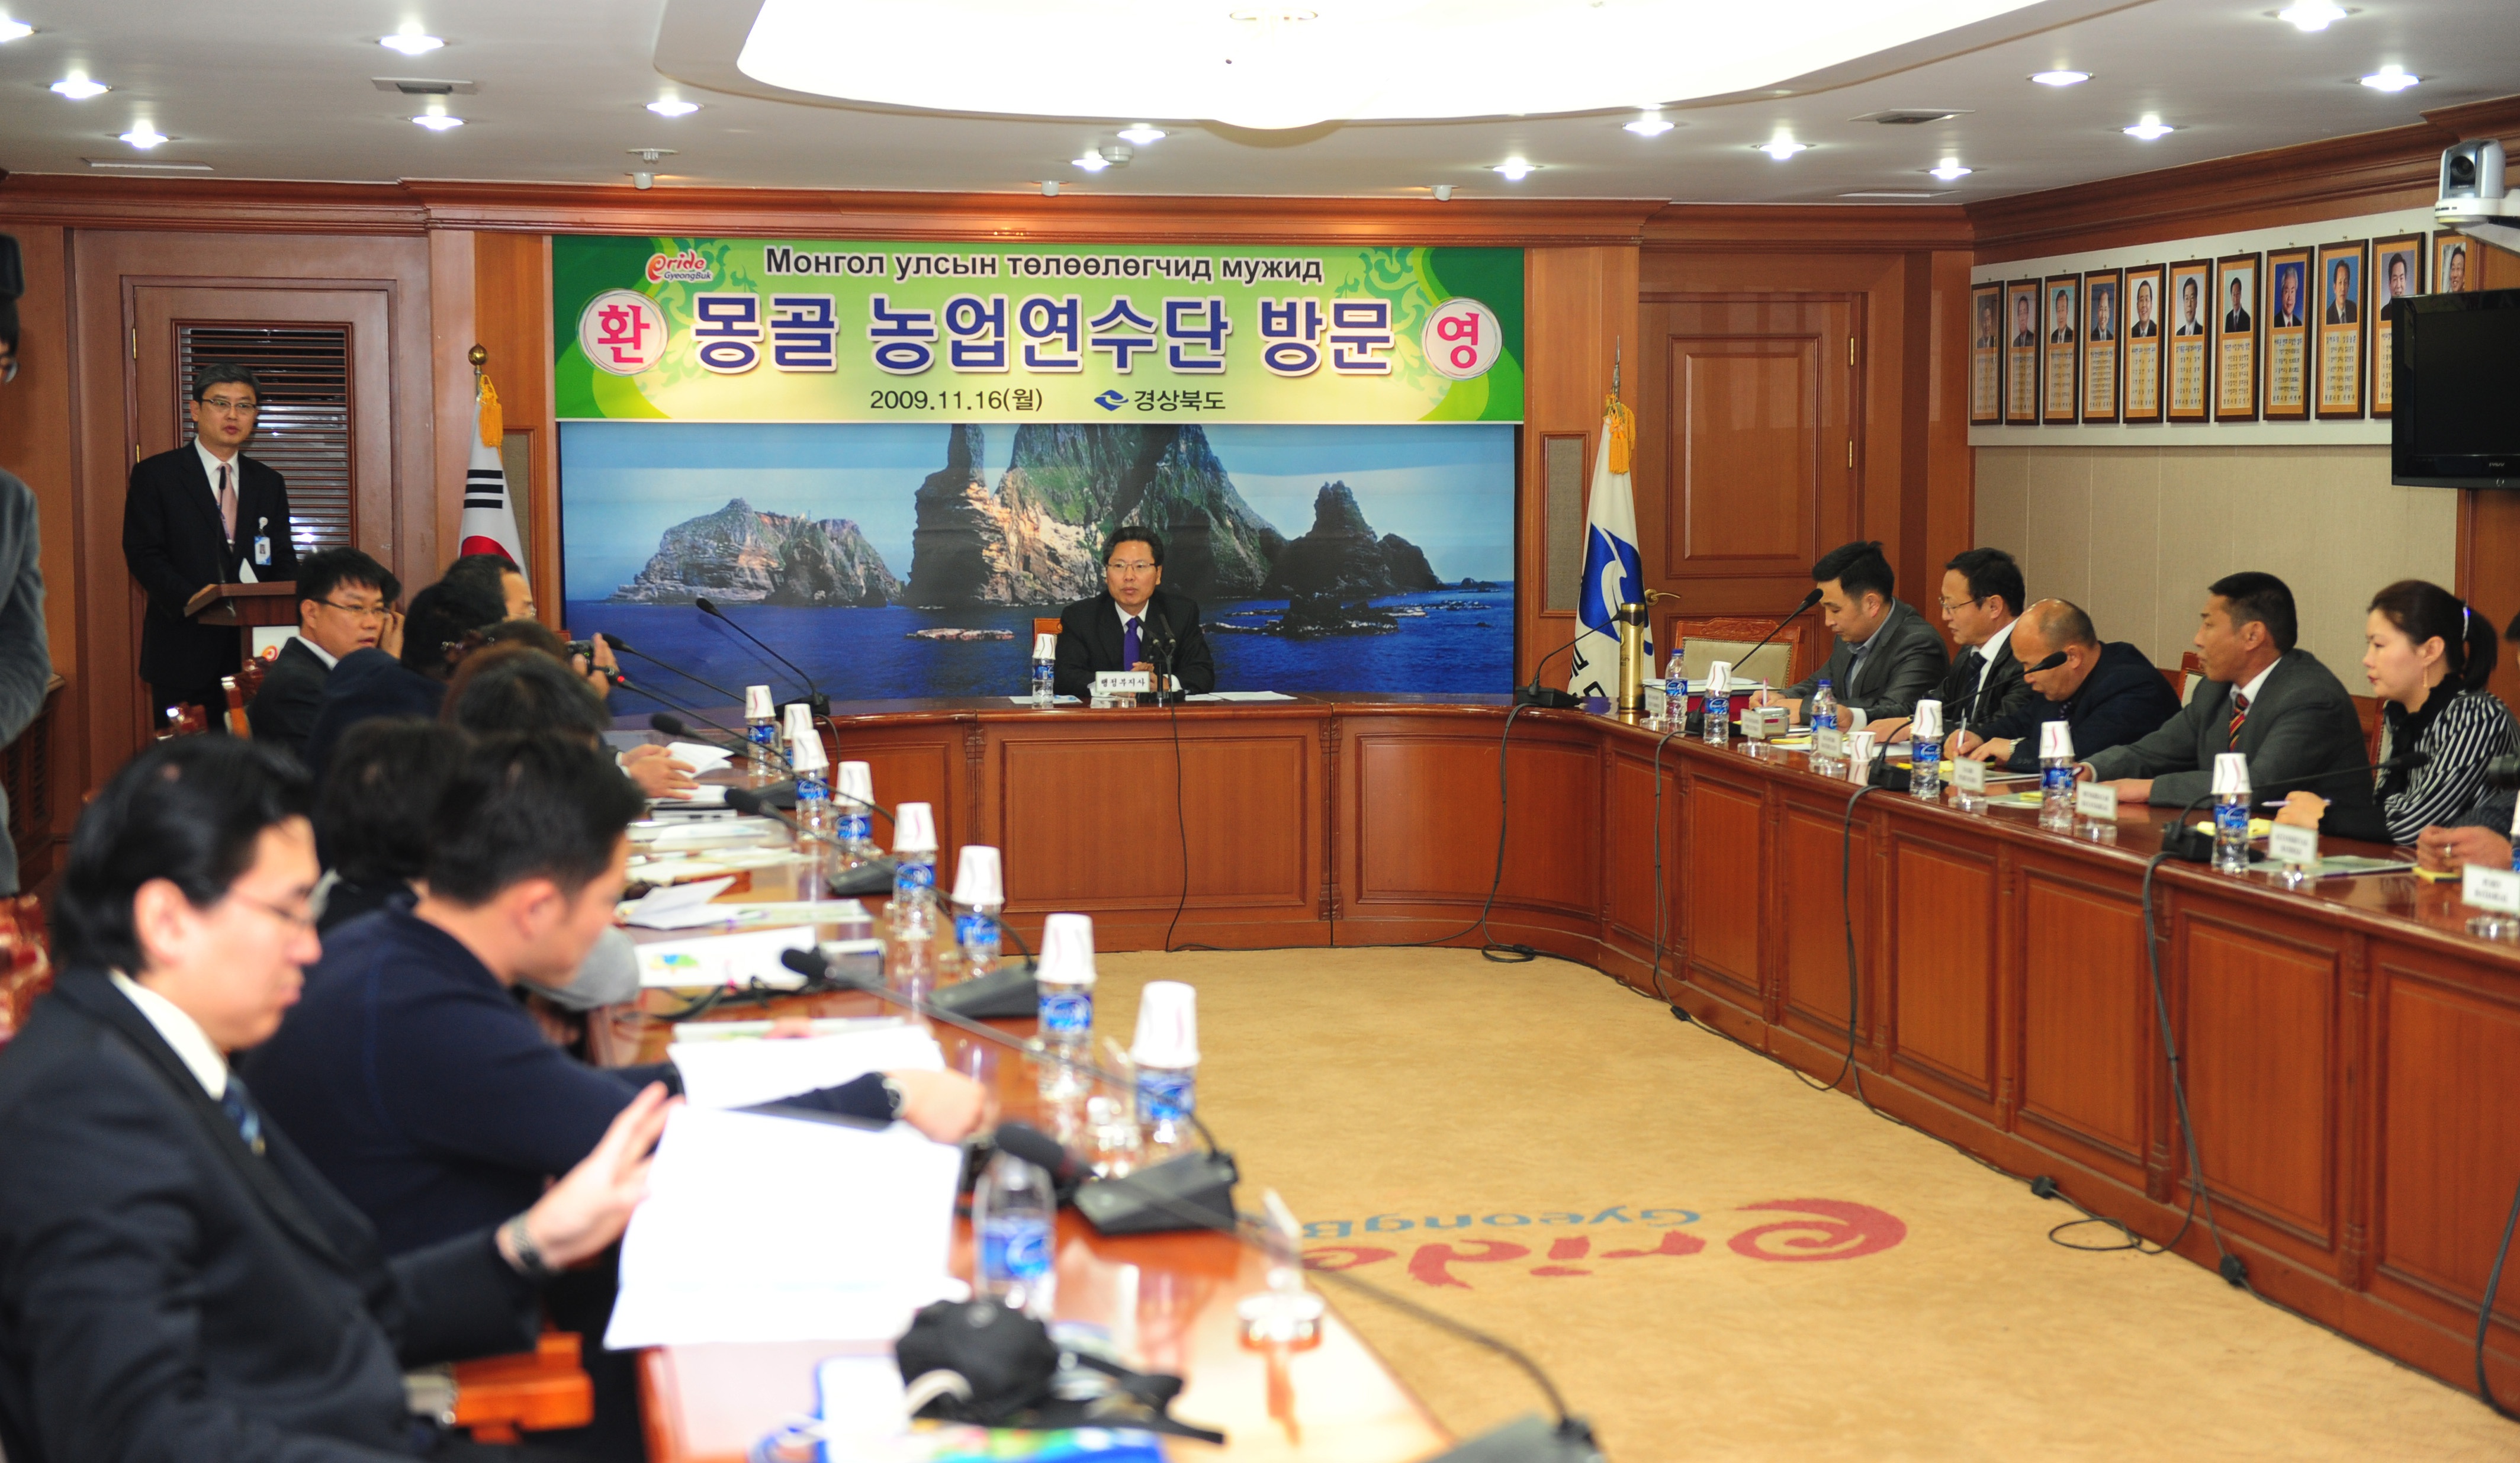 20091116 몽공농업연수단방문(행정)